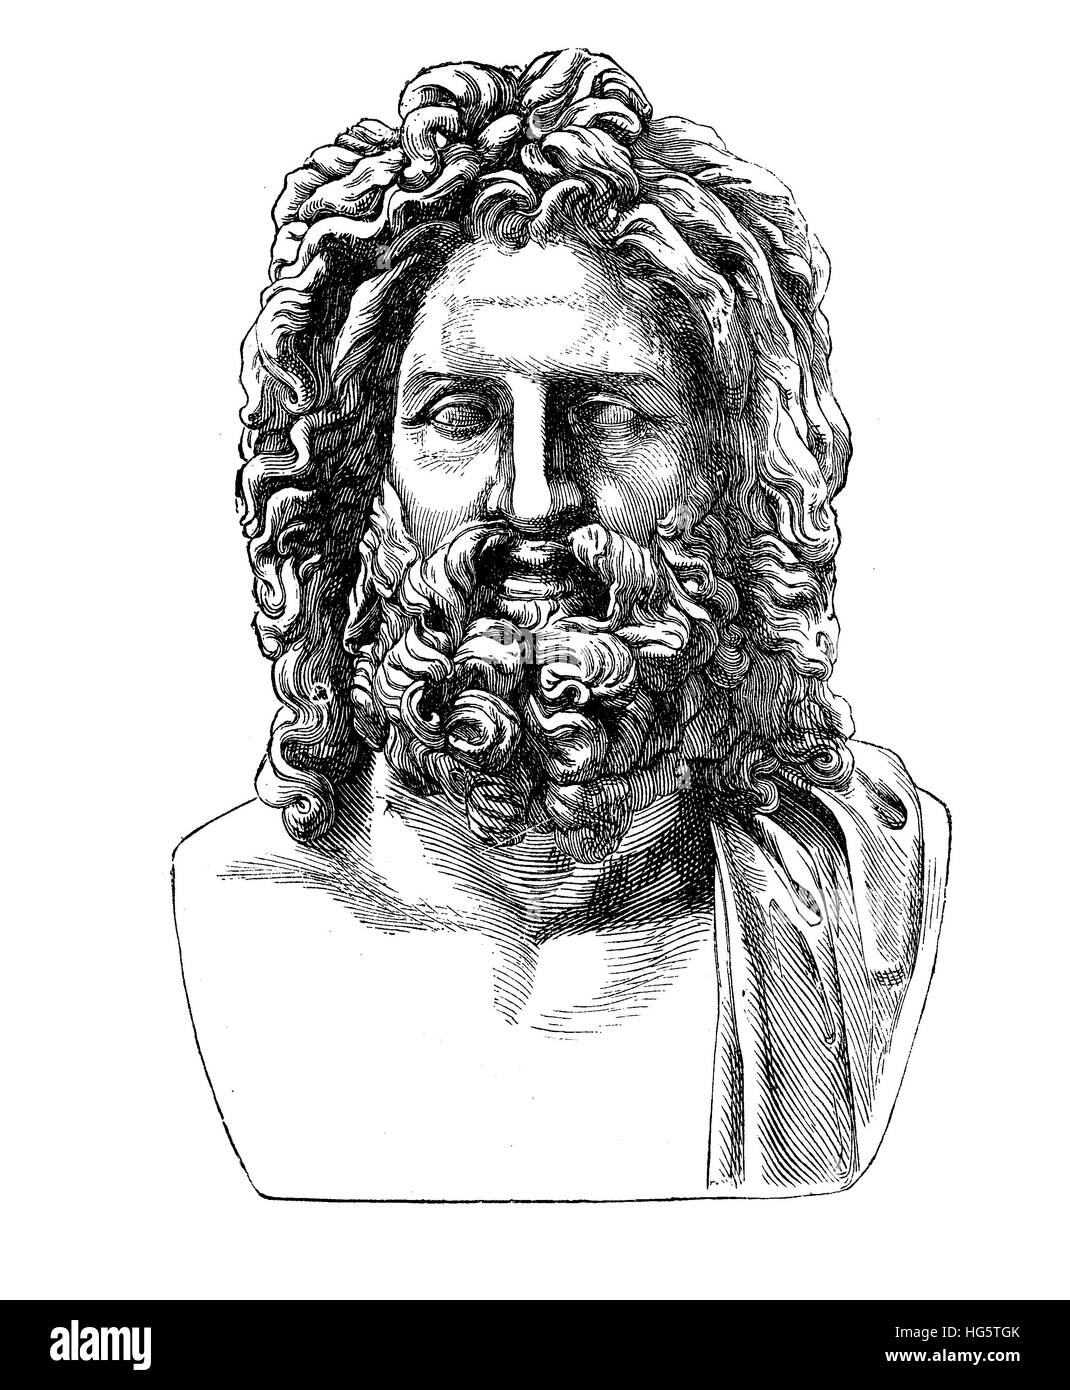 Buste de romaine antique Zeus hellénique, trouvé dans la ville ombrienne Otricoli en 1775, maintenant au musée du Vatican Banque D'Images